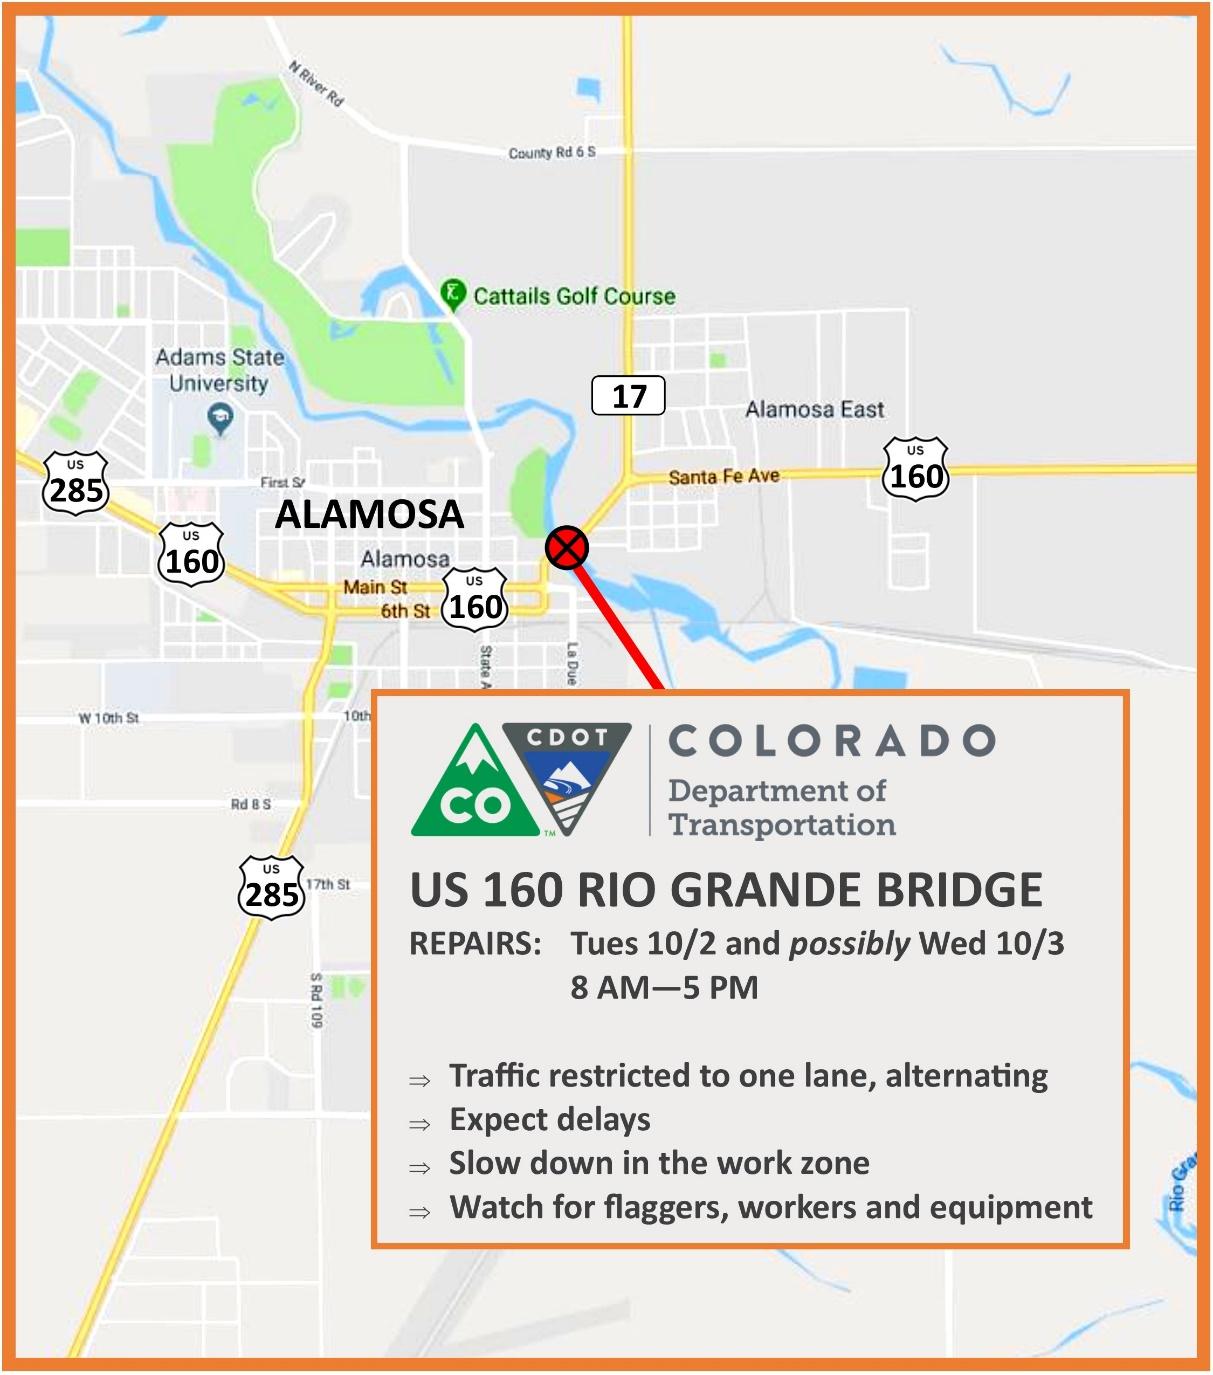 US 160 Rio Grande Bridge Repairs detail image